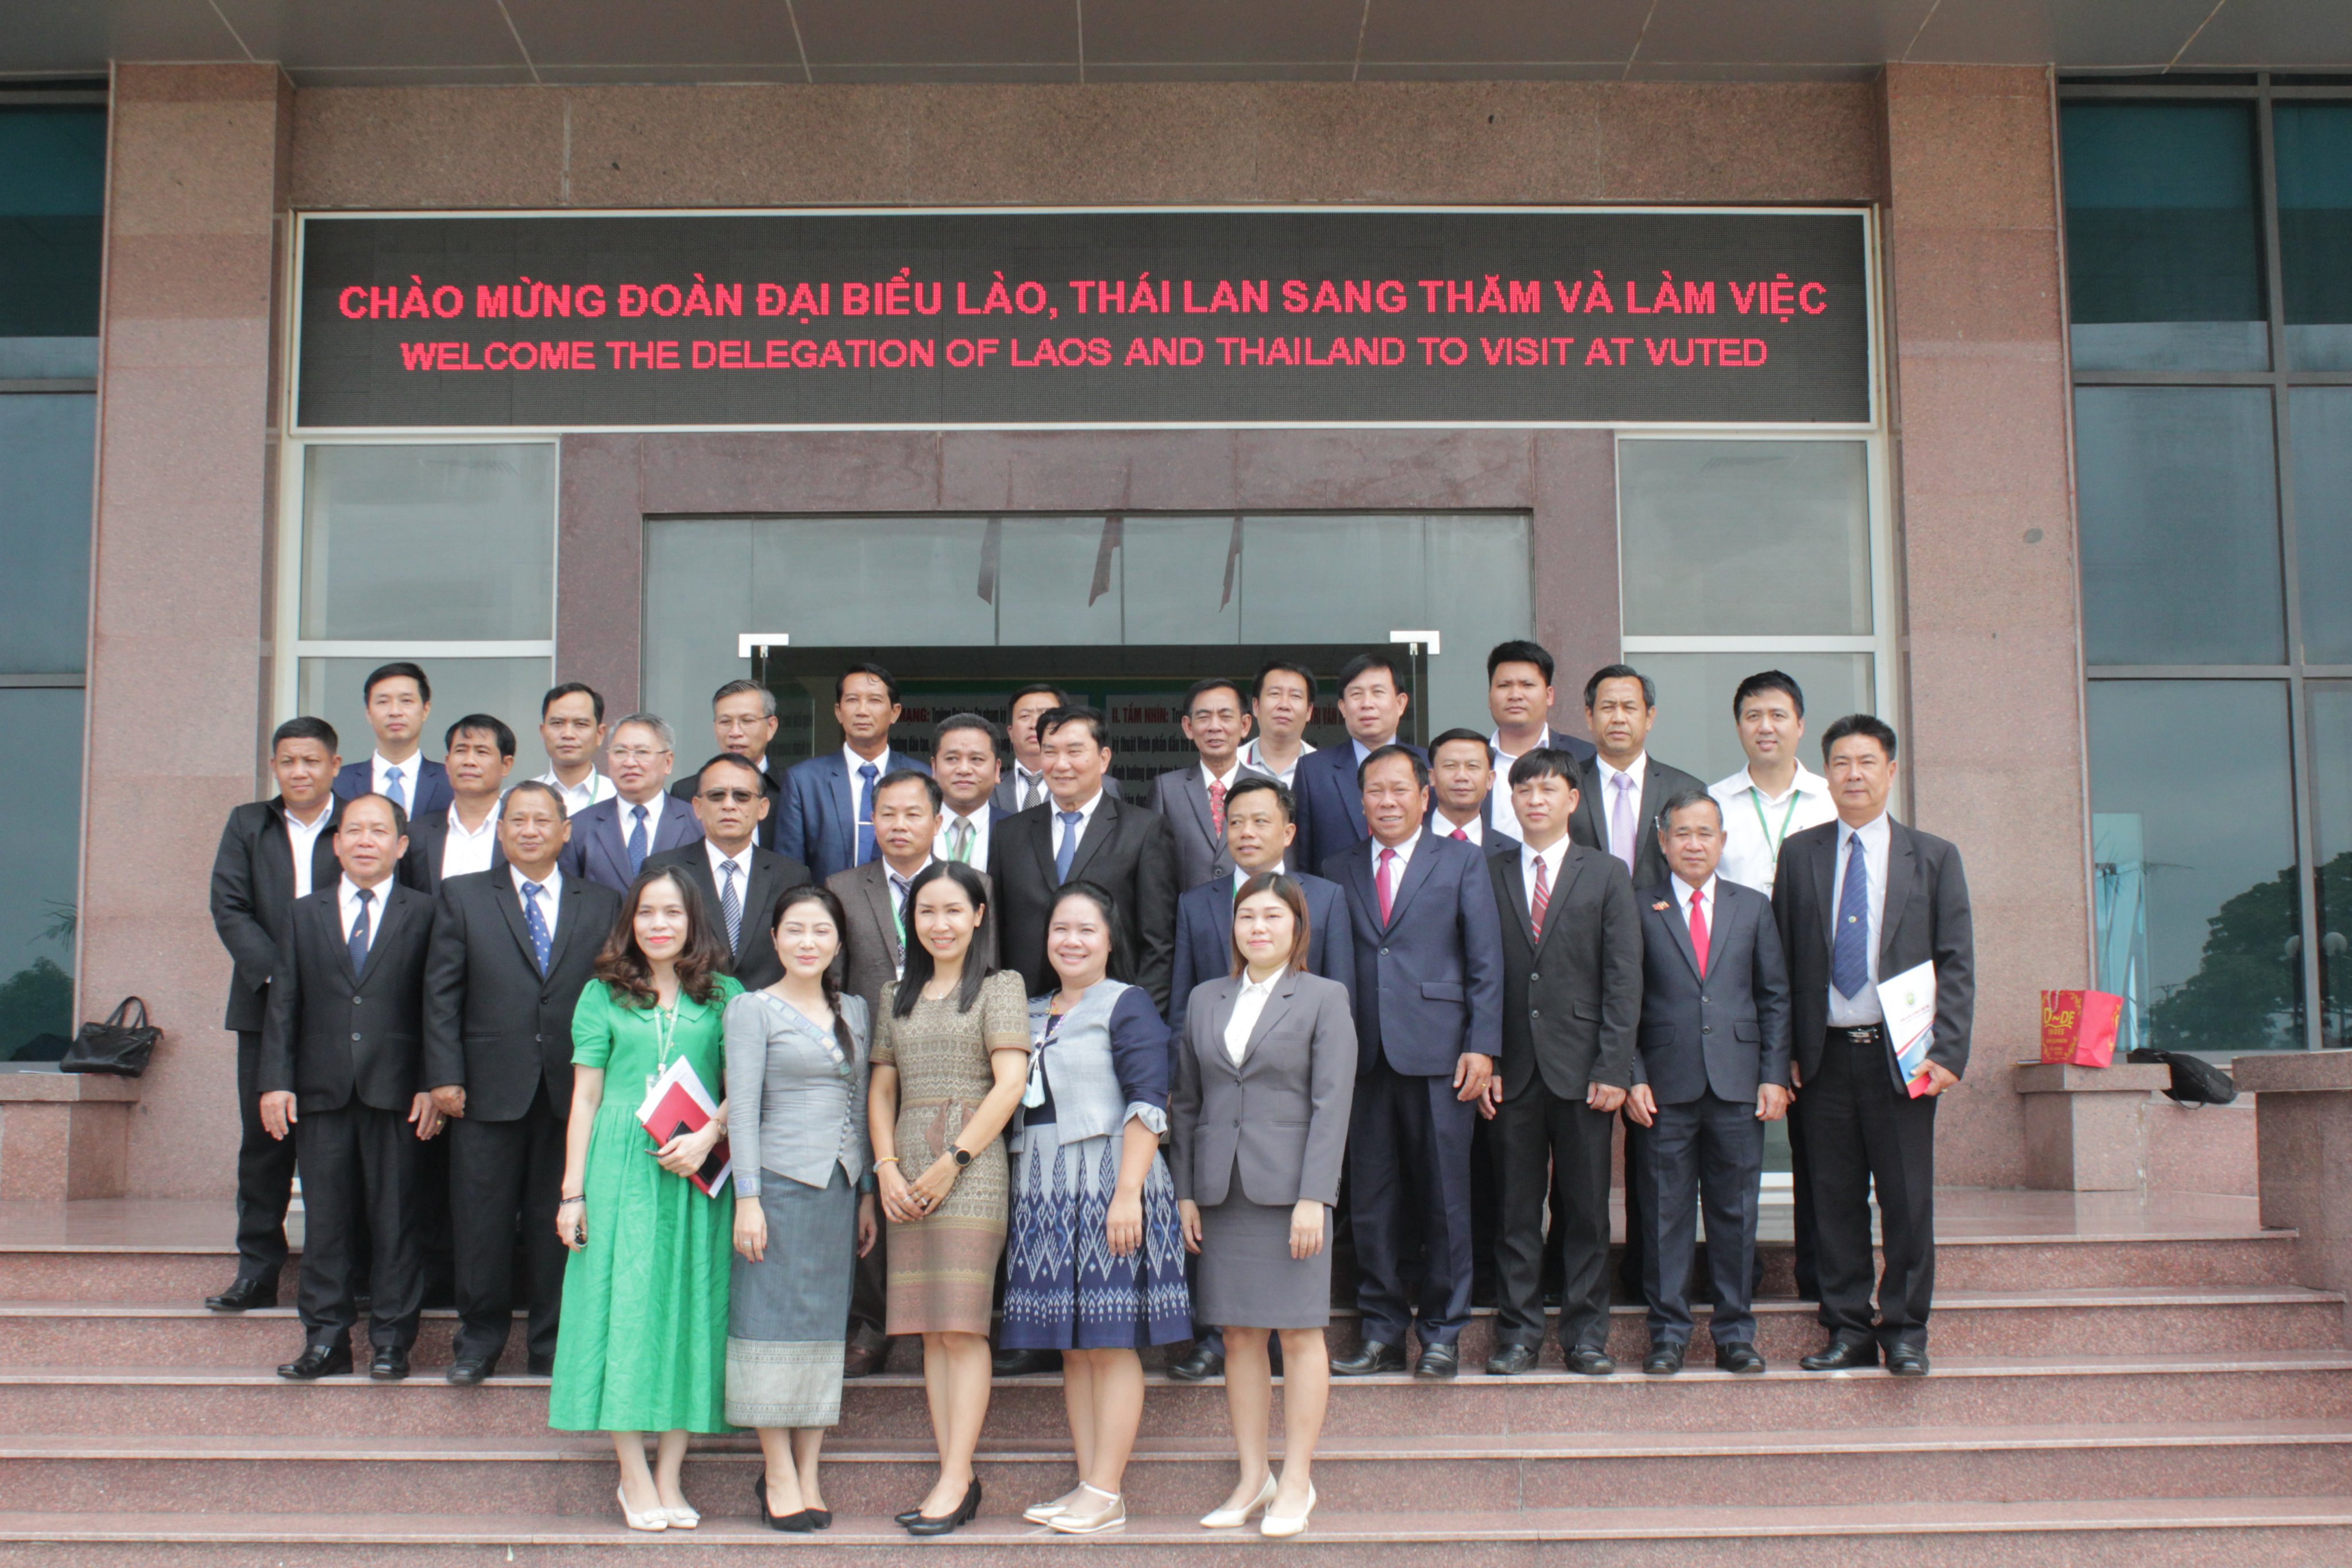 Trường Đại học Sư phạm Kỹ thuật Vinh ký kết biên bản ghi nhớ hợp tác với các Học viện, trường Cao đẳng nước CHDCND Lào  và các trường Cao đẳng Thái Lan.